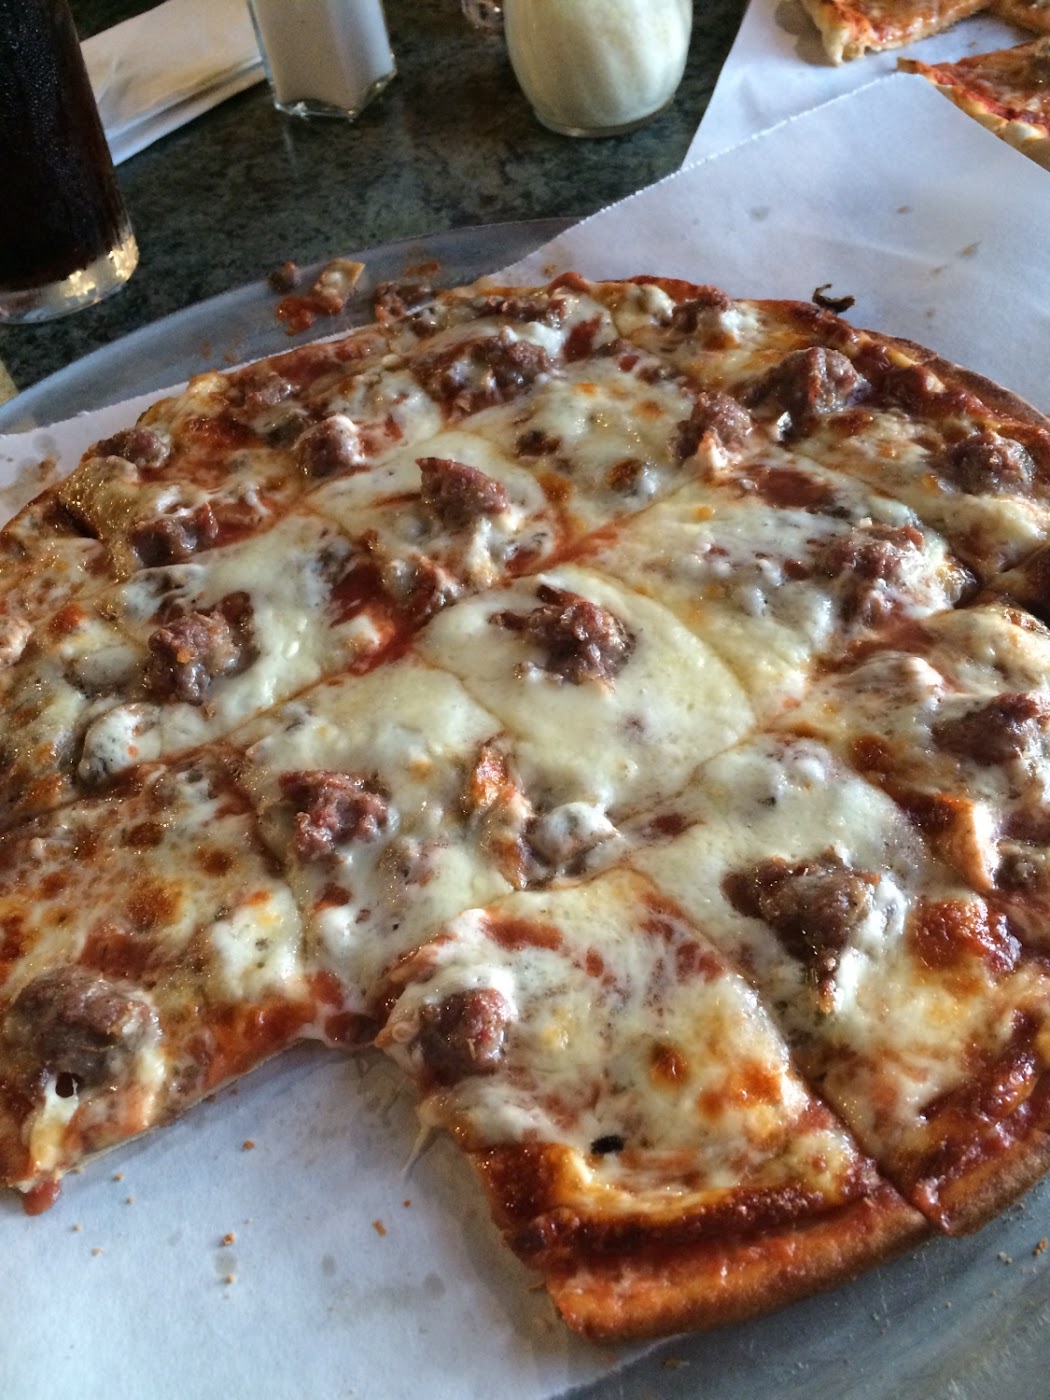 Sammy's Pizza & Restaurant Gluten Free - Coon Rapids - 2020